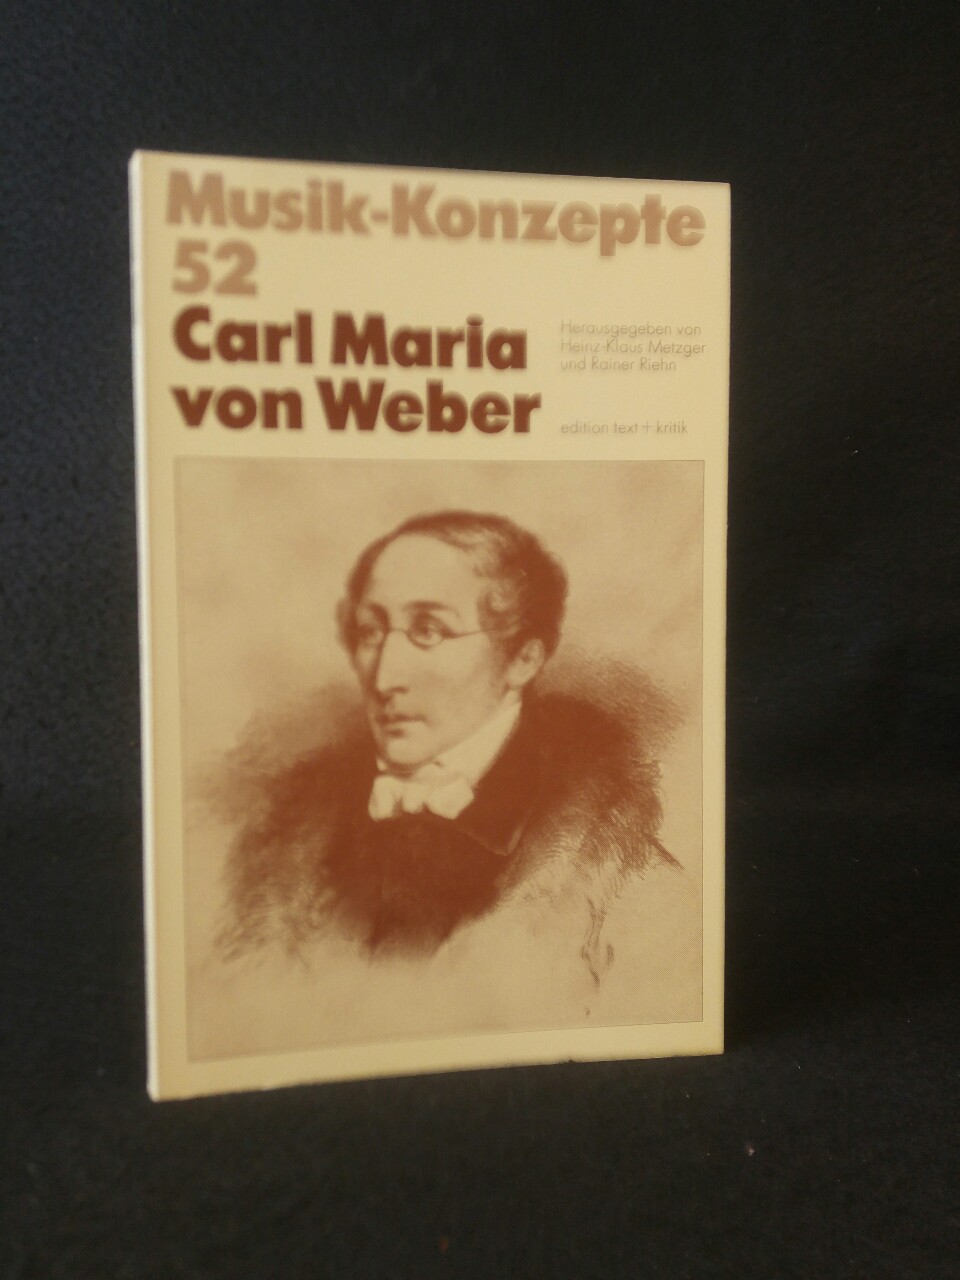 Carl Maria von Weber (Musik-Konzepte 52) - Heinz-Klaus Metzger, Heinz-Klaus und Rainer Rainer Riehn